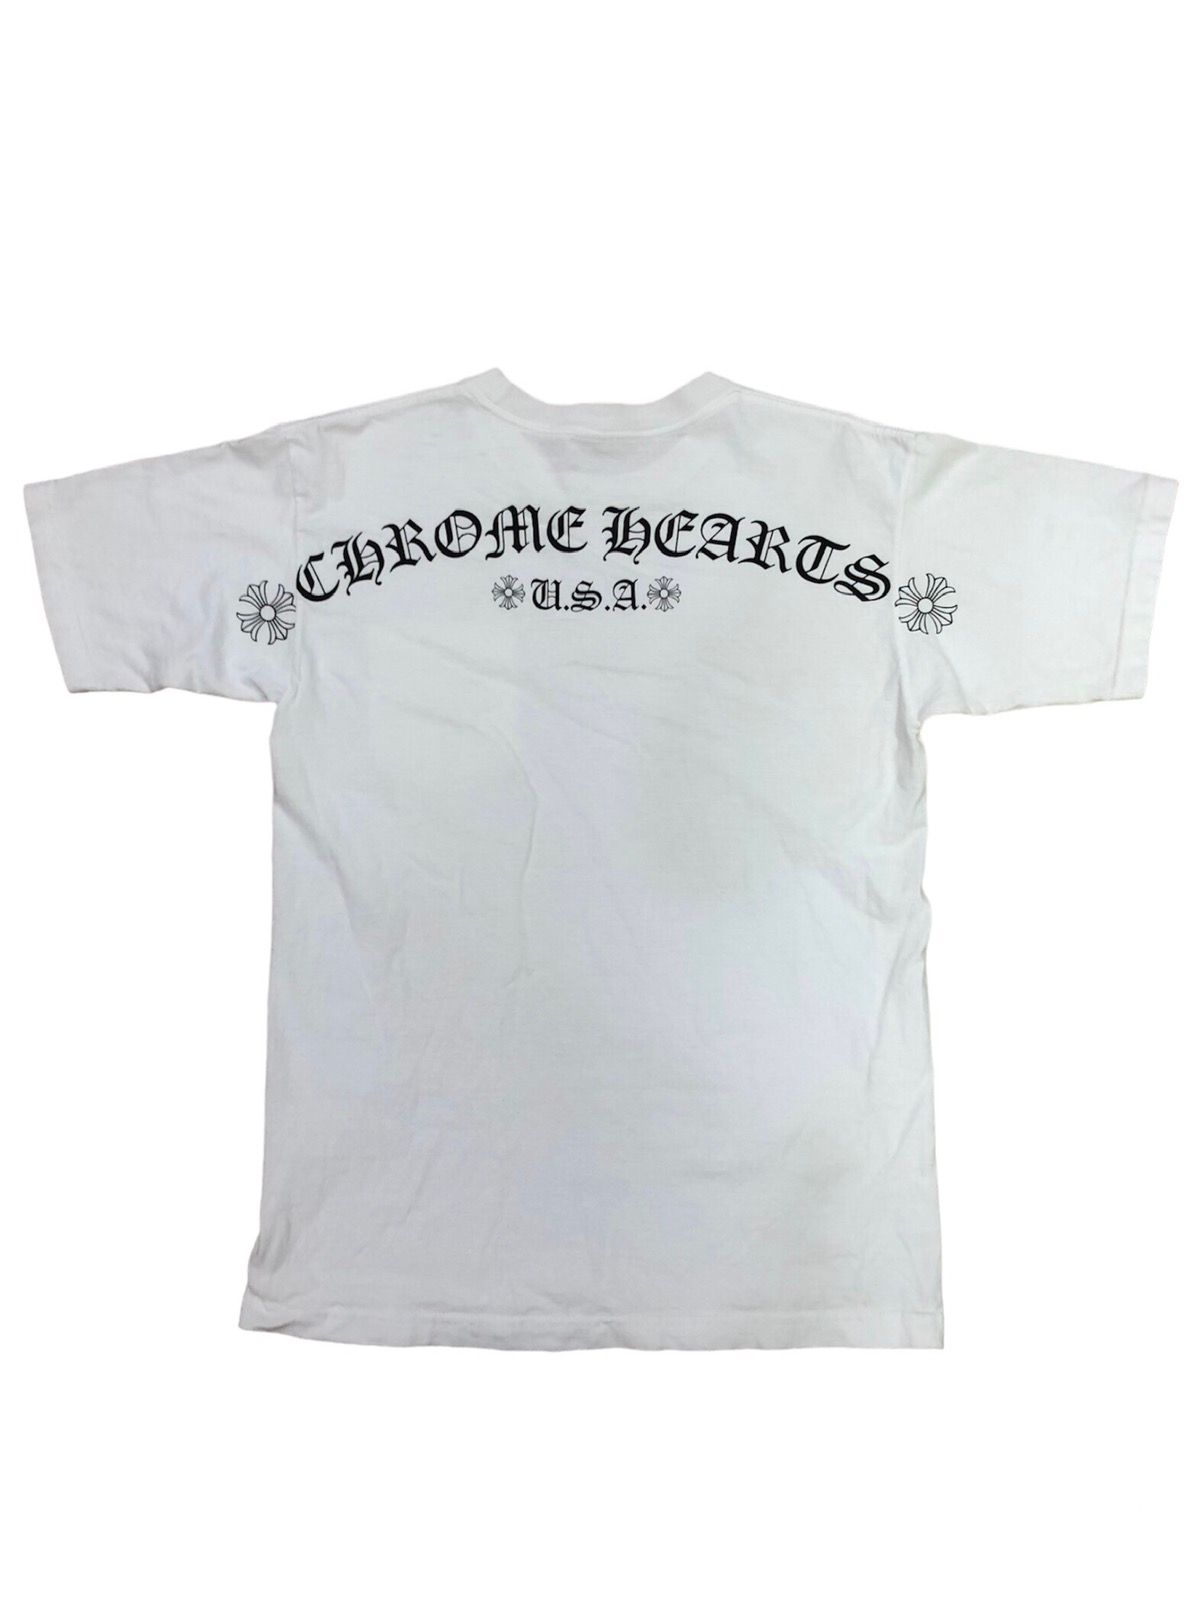 Chrome Hearts U.S.A. T-shirt (Japan Market) - 1